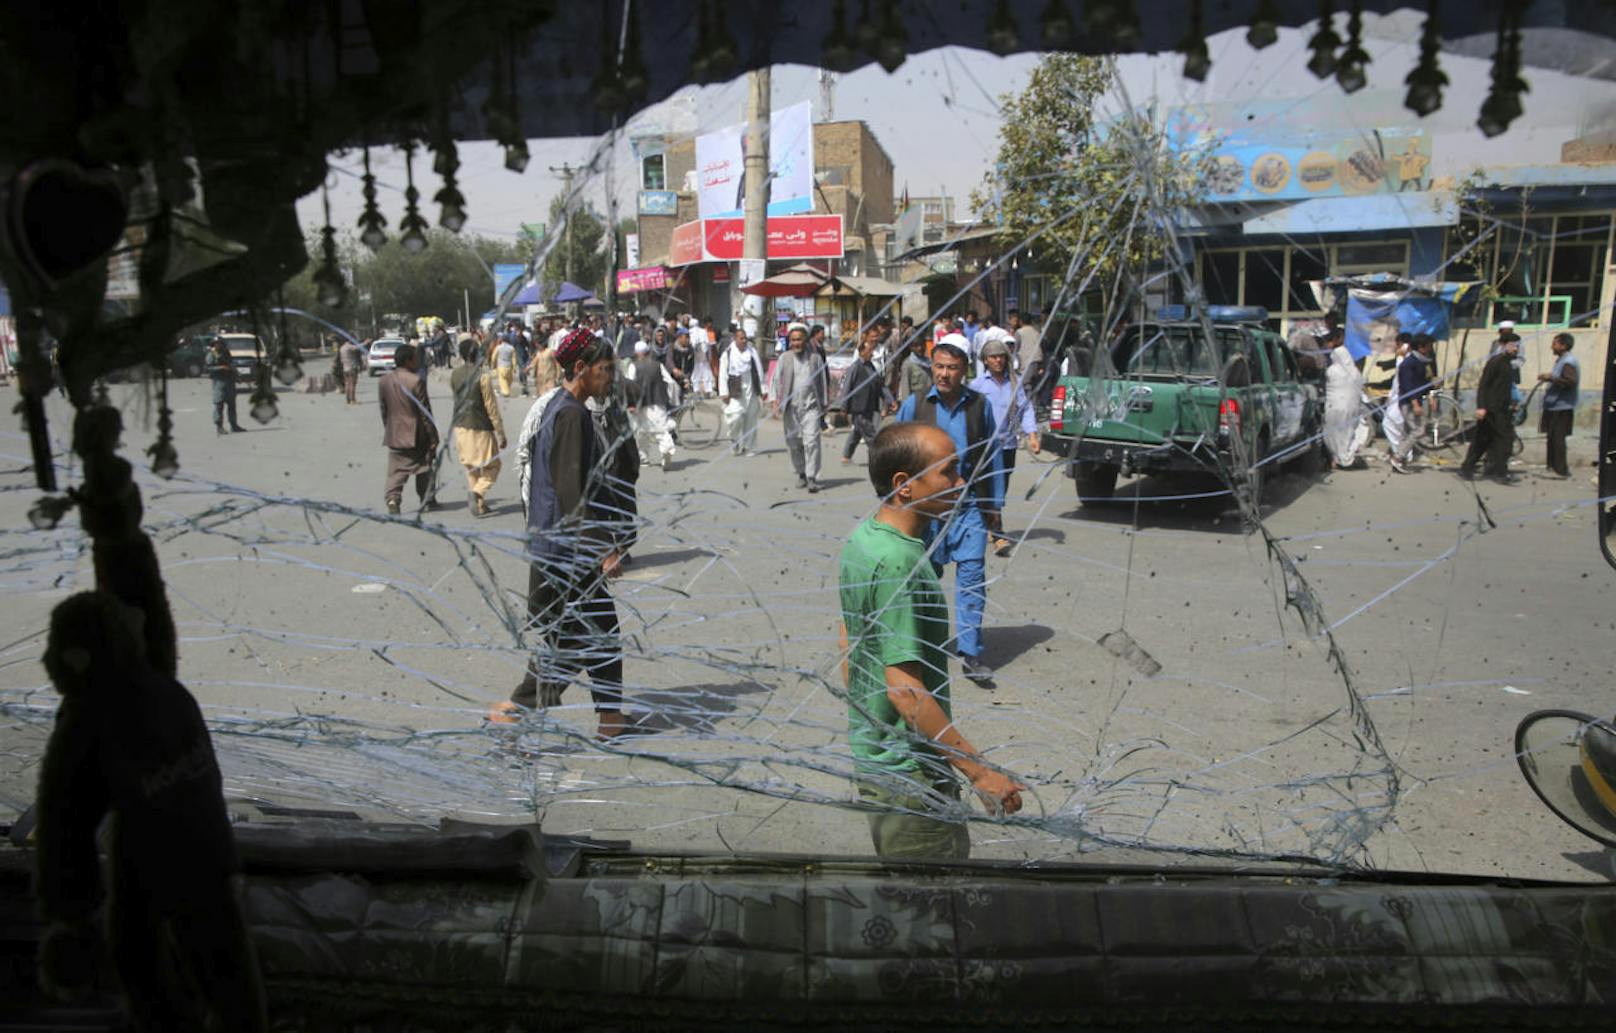 Am Mittwoch ereignete sich ein Selbstmordanschlag in der afghanischen Hauptstadt Kabul. Ein Attentäter hatte sich mittels Autobombe bei einer Polizeistation in die Luft gesprengt.